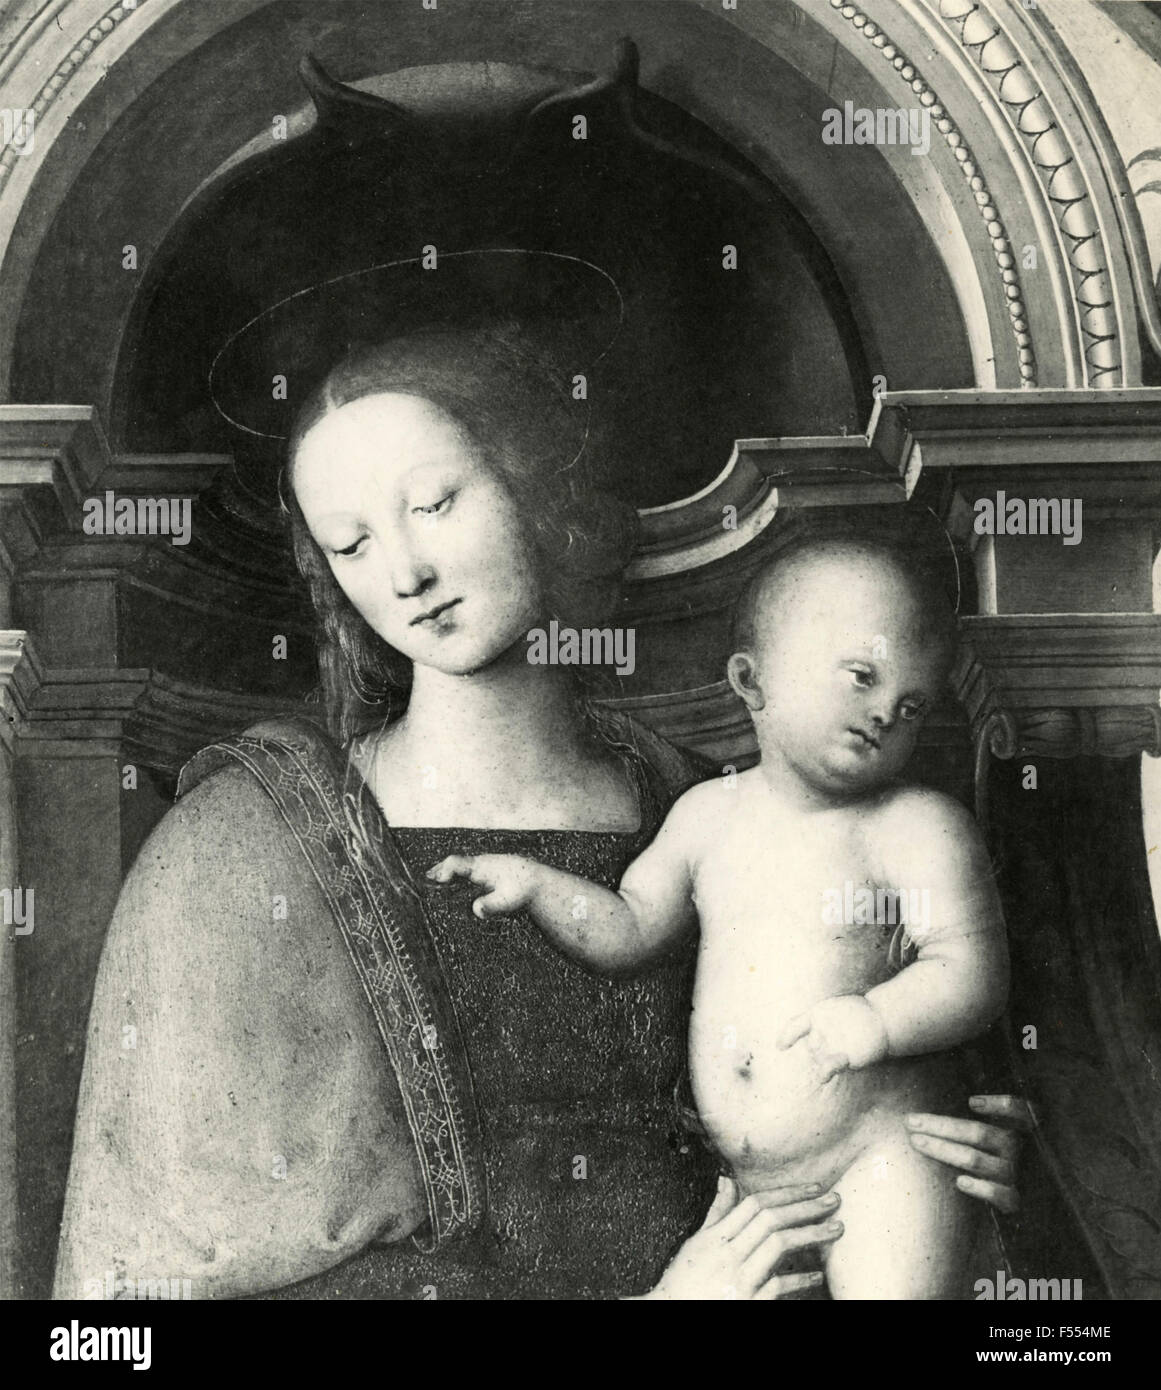 Arte sacra: Madonna con bambino Foto Stock